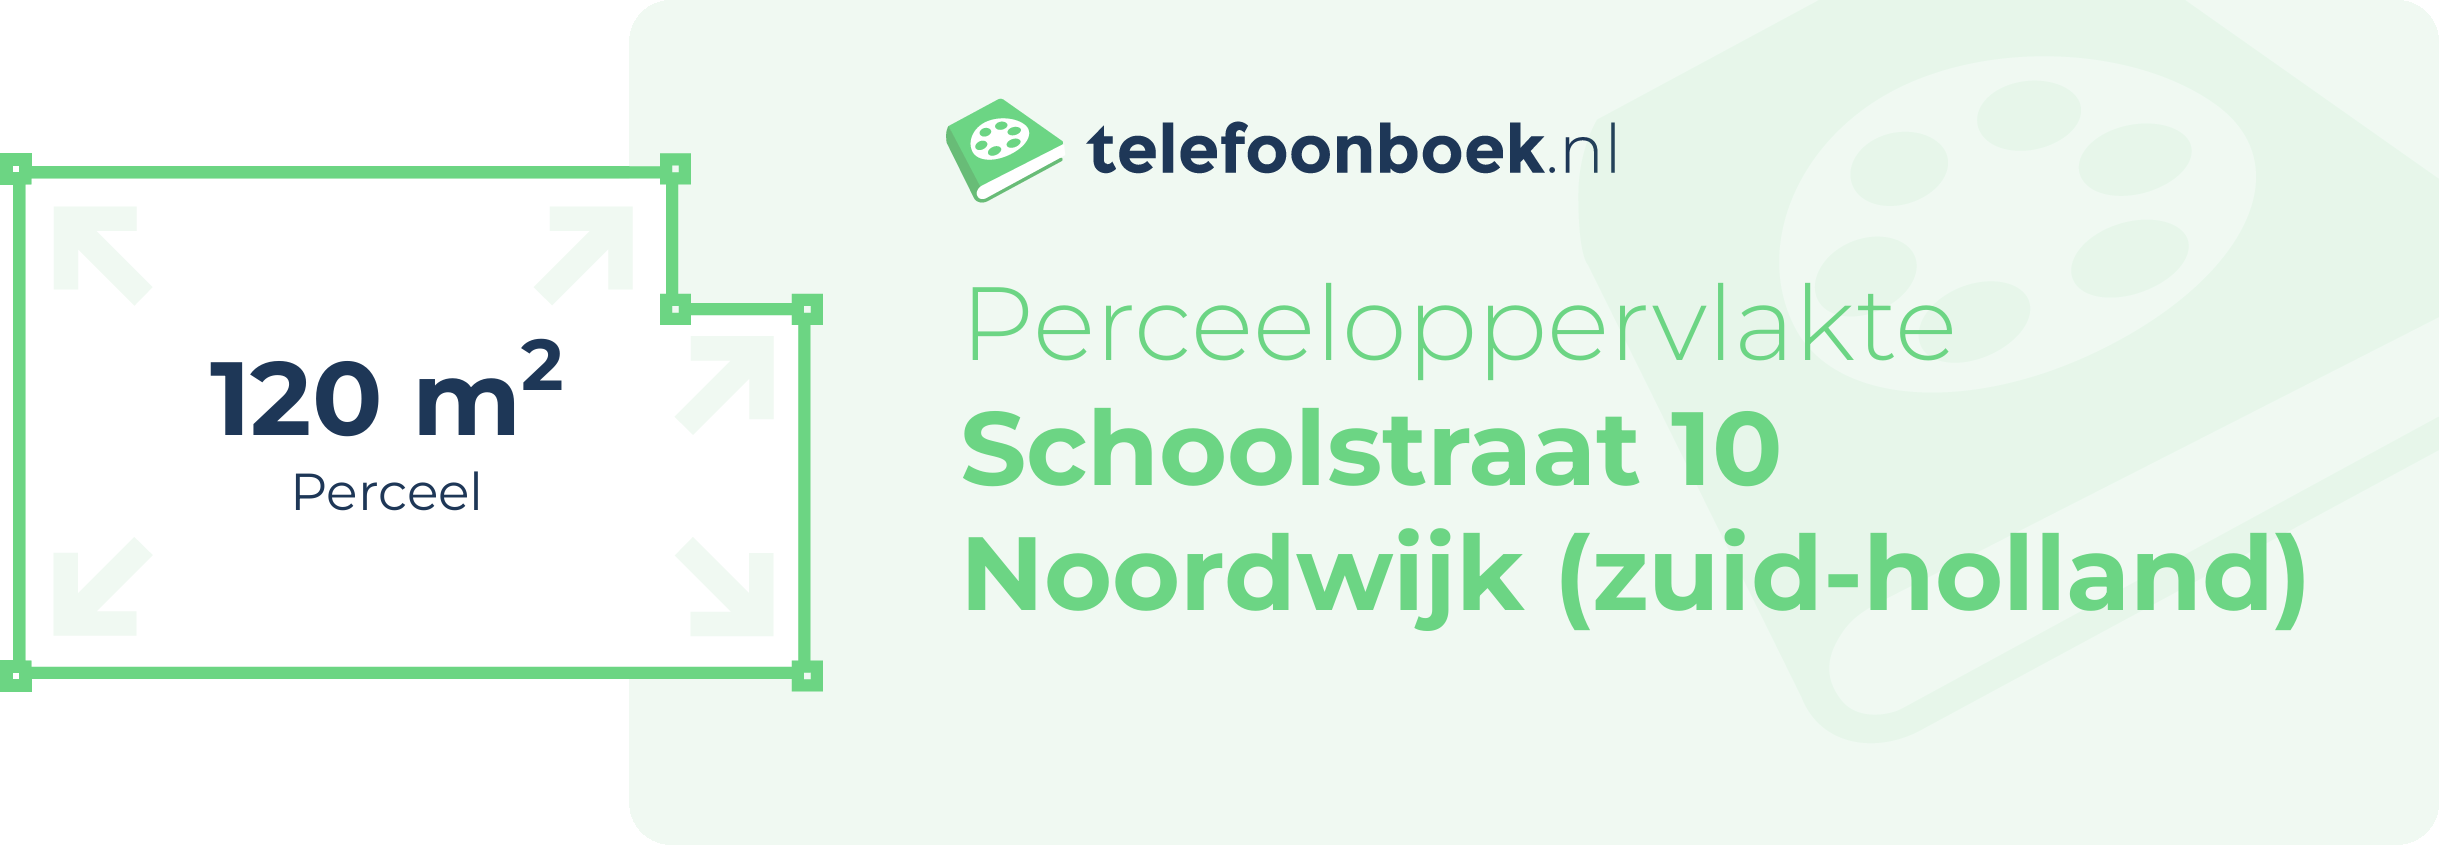 Perceeloppervlakte Schoolstraat 10 Noordwijk (Zuid-Holland)